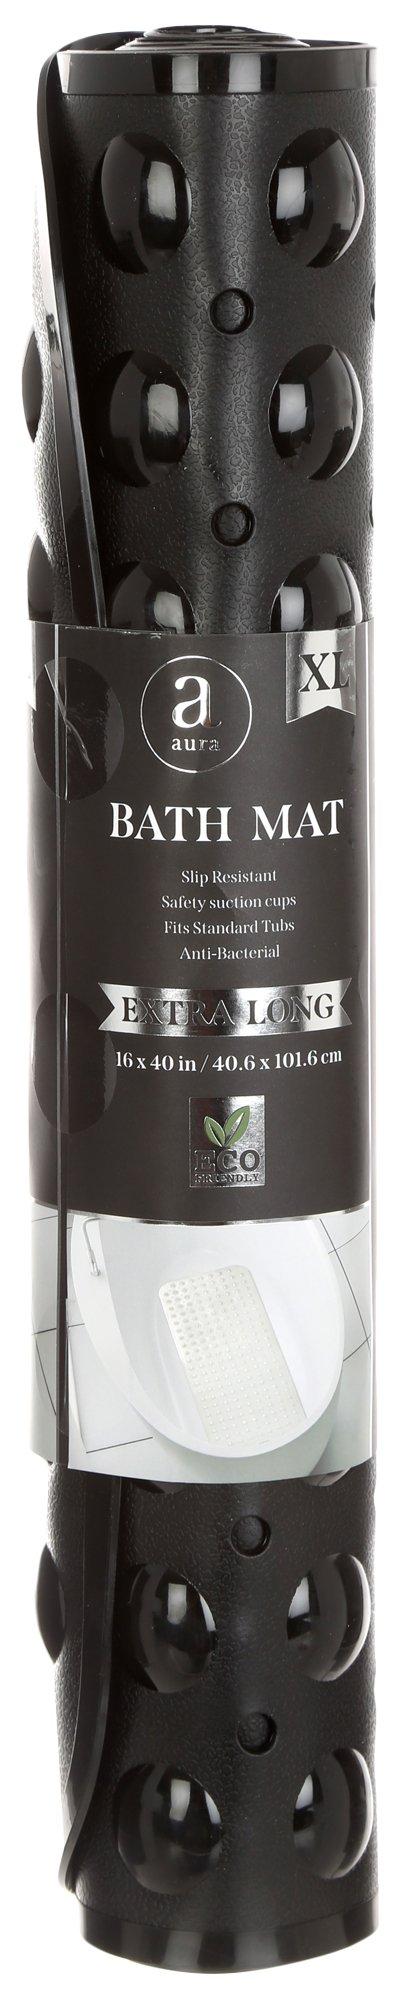 16x40 Bath Mat